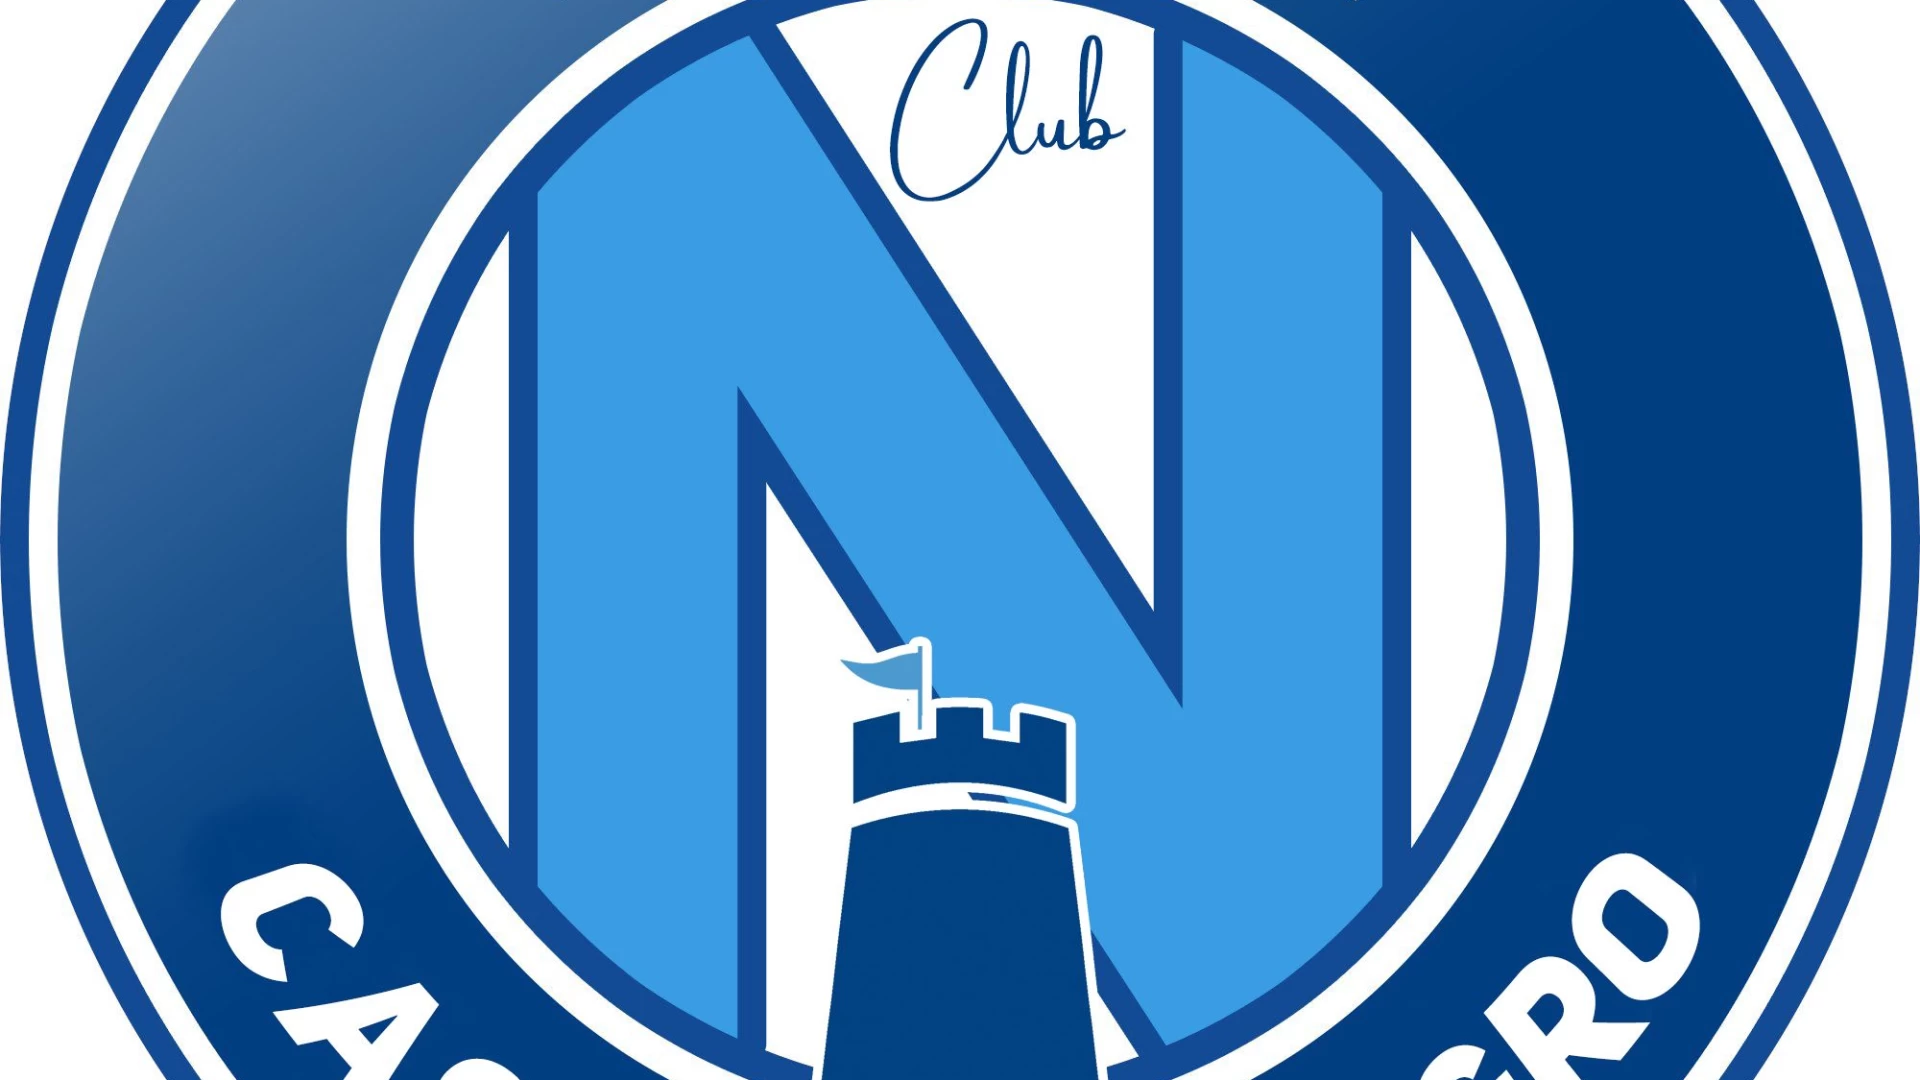 Castel Di Sangro: "Abbiamo un sogno del cuore". Al via il progetto della creazione del Club Napoli con sede in città.